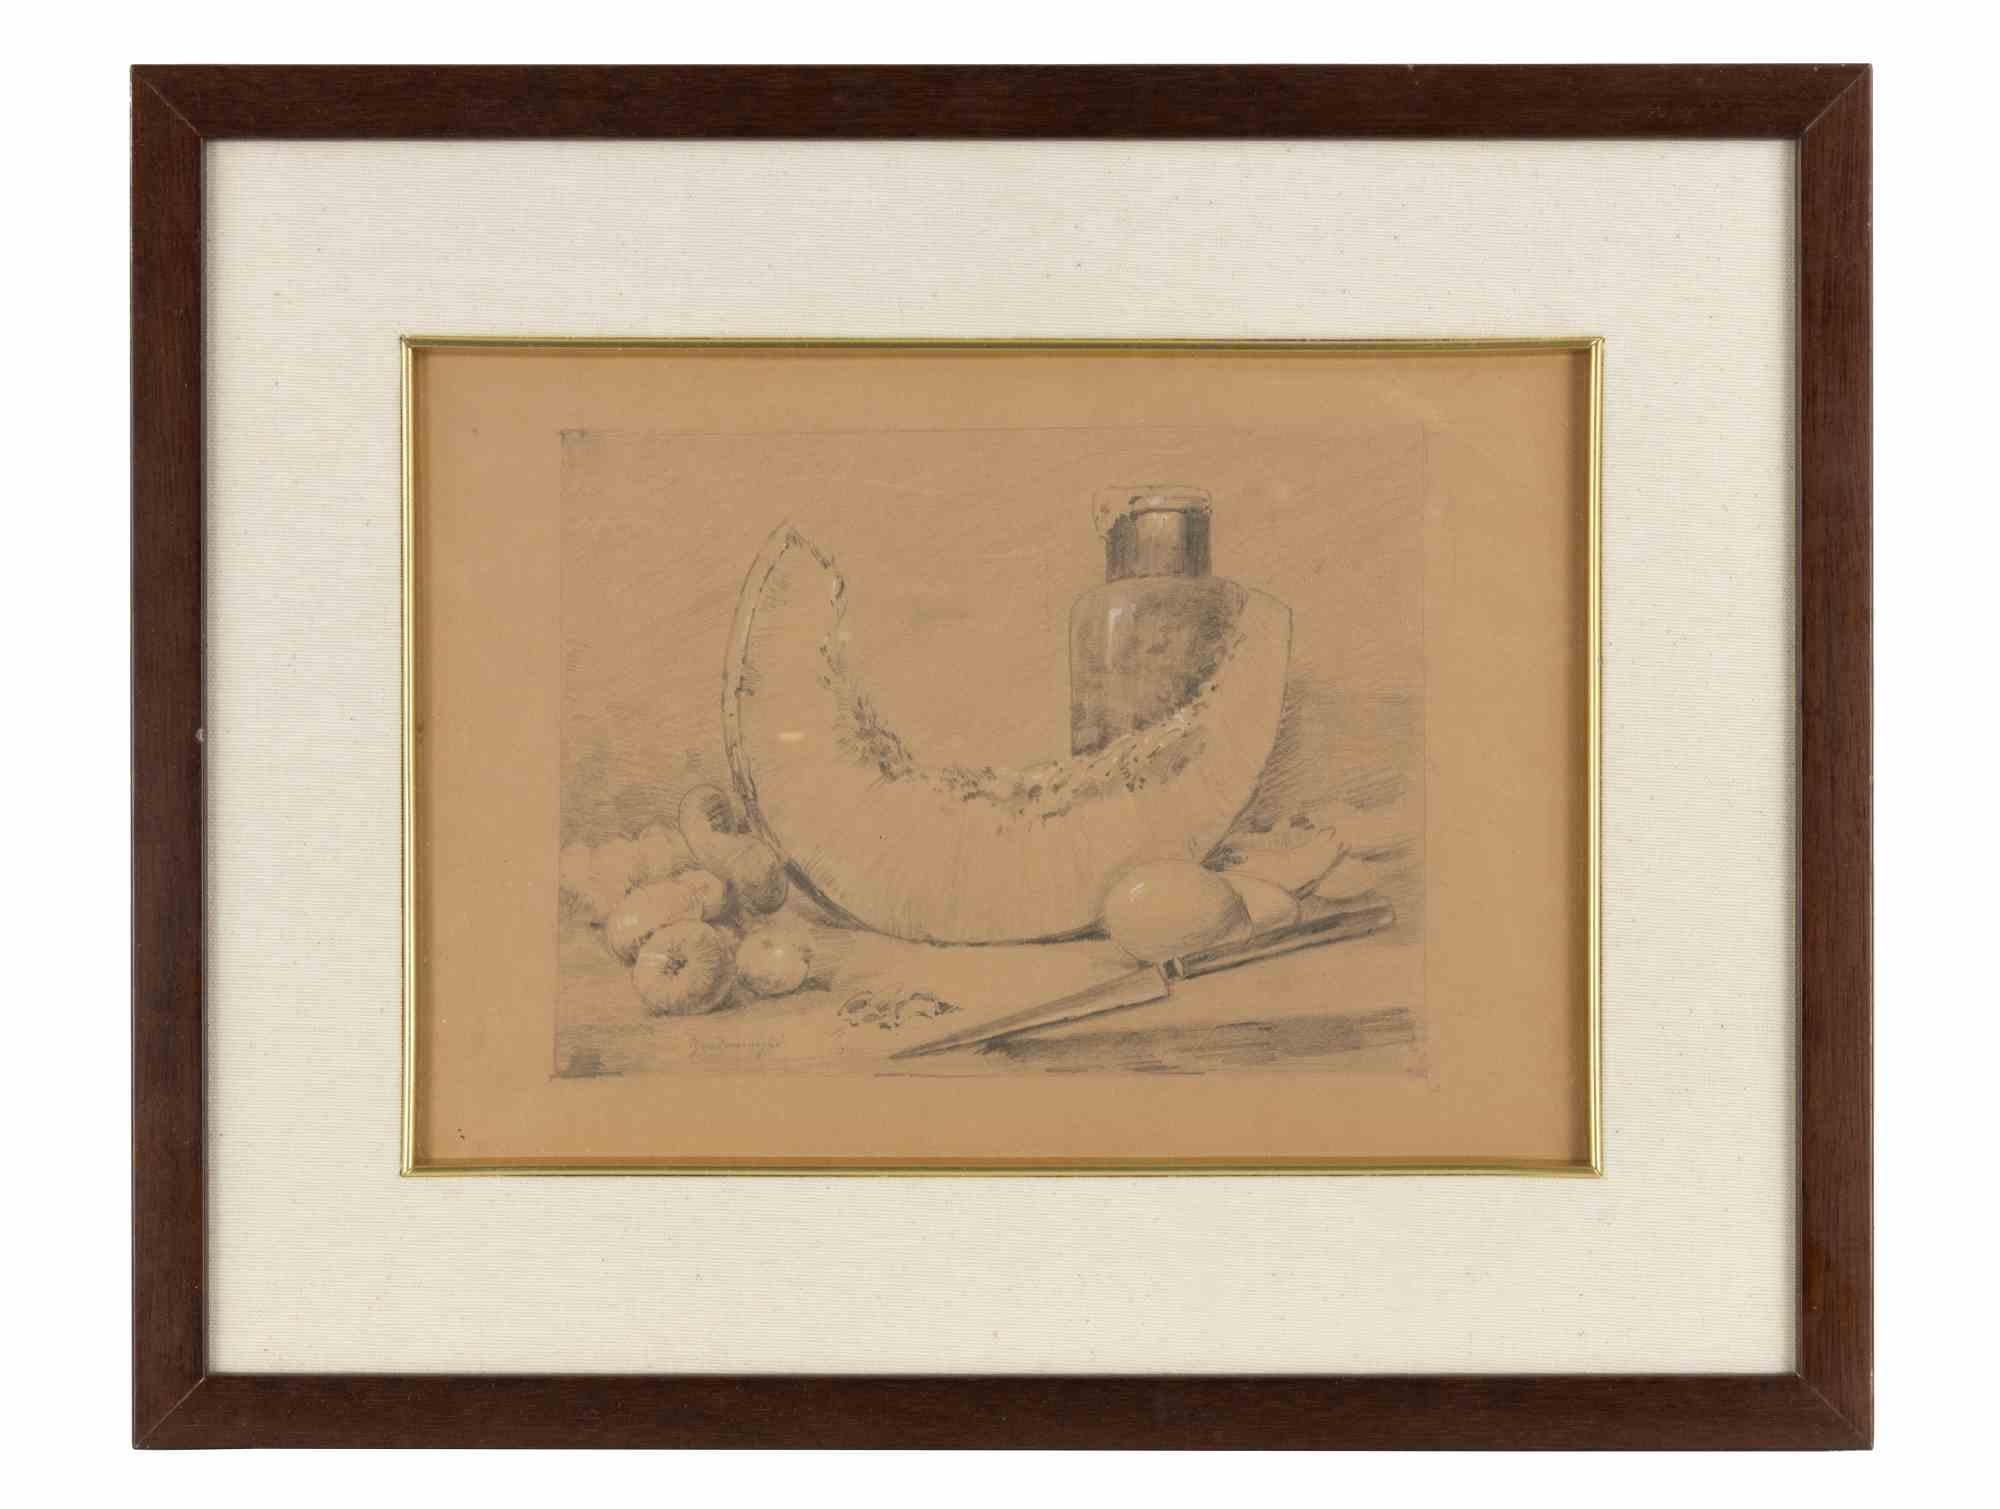 Nature morte est une œuvre d'art moderne originale réalisée par l'artiste Federico Zandomeneghi (1841-1917).

Dessin au crayon sur papier.

Signé à la main par l'artiste dans la marge inférieure.

Inclut le cadre :  36 x 45 cm

Ne manquez pas ce